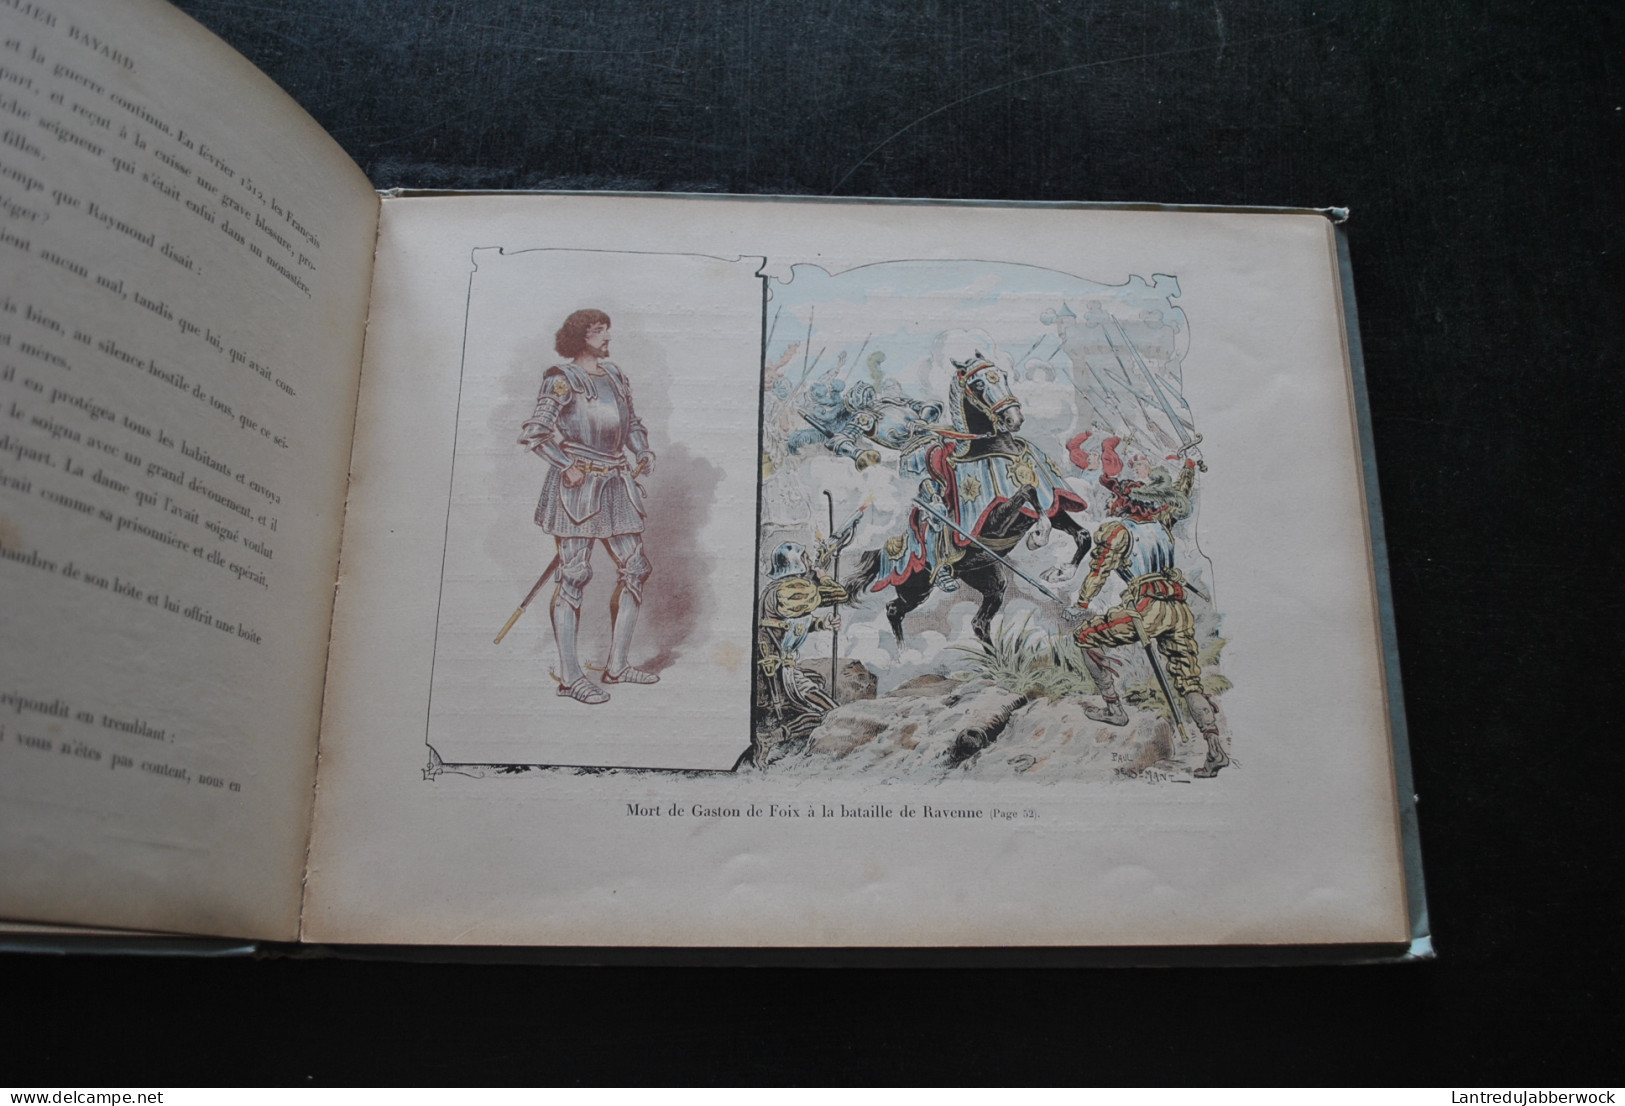 Théodore CAHU Histoire du Chevalier BAYARD racontée à mes enfants Illustrations Paul DE SEMANT Les héros de France RARE